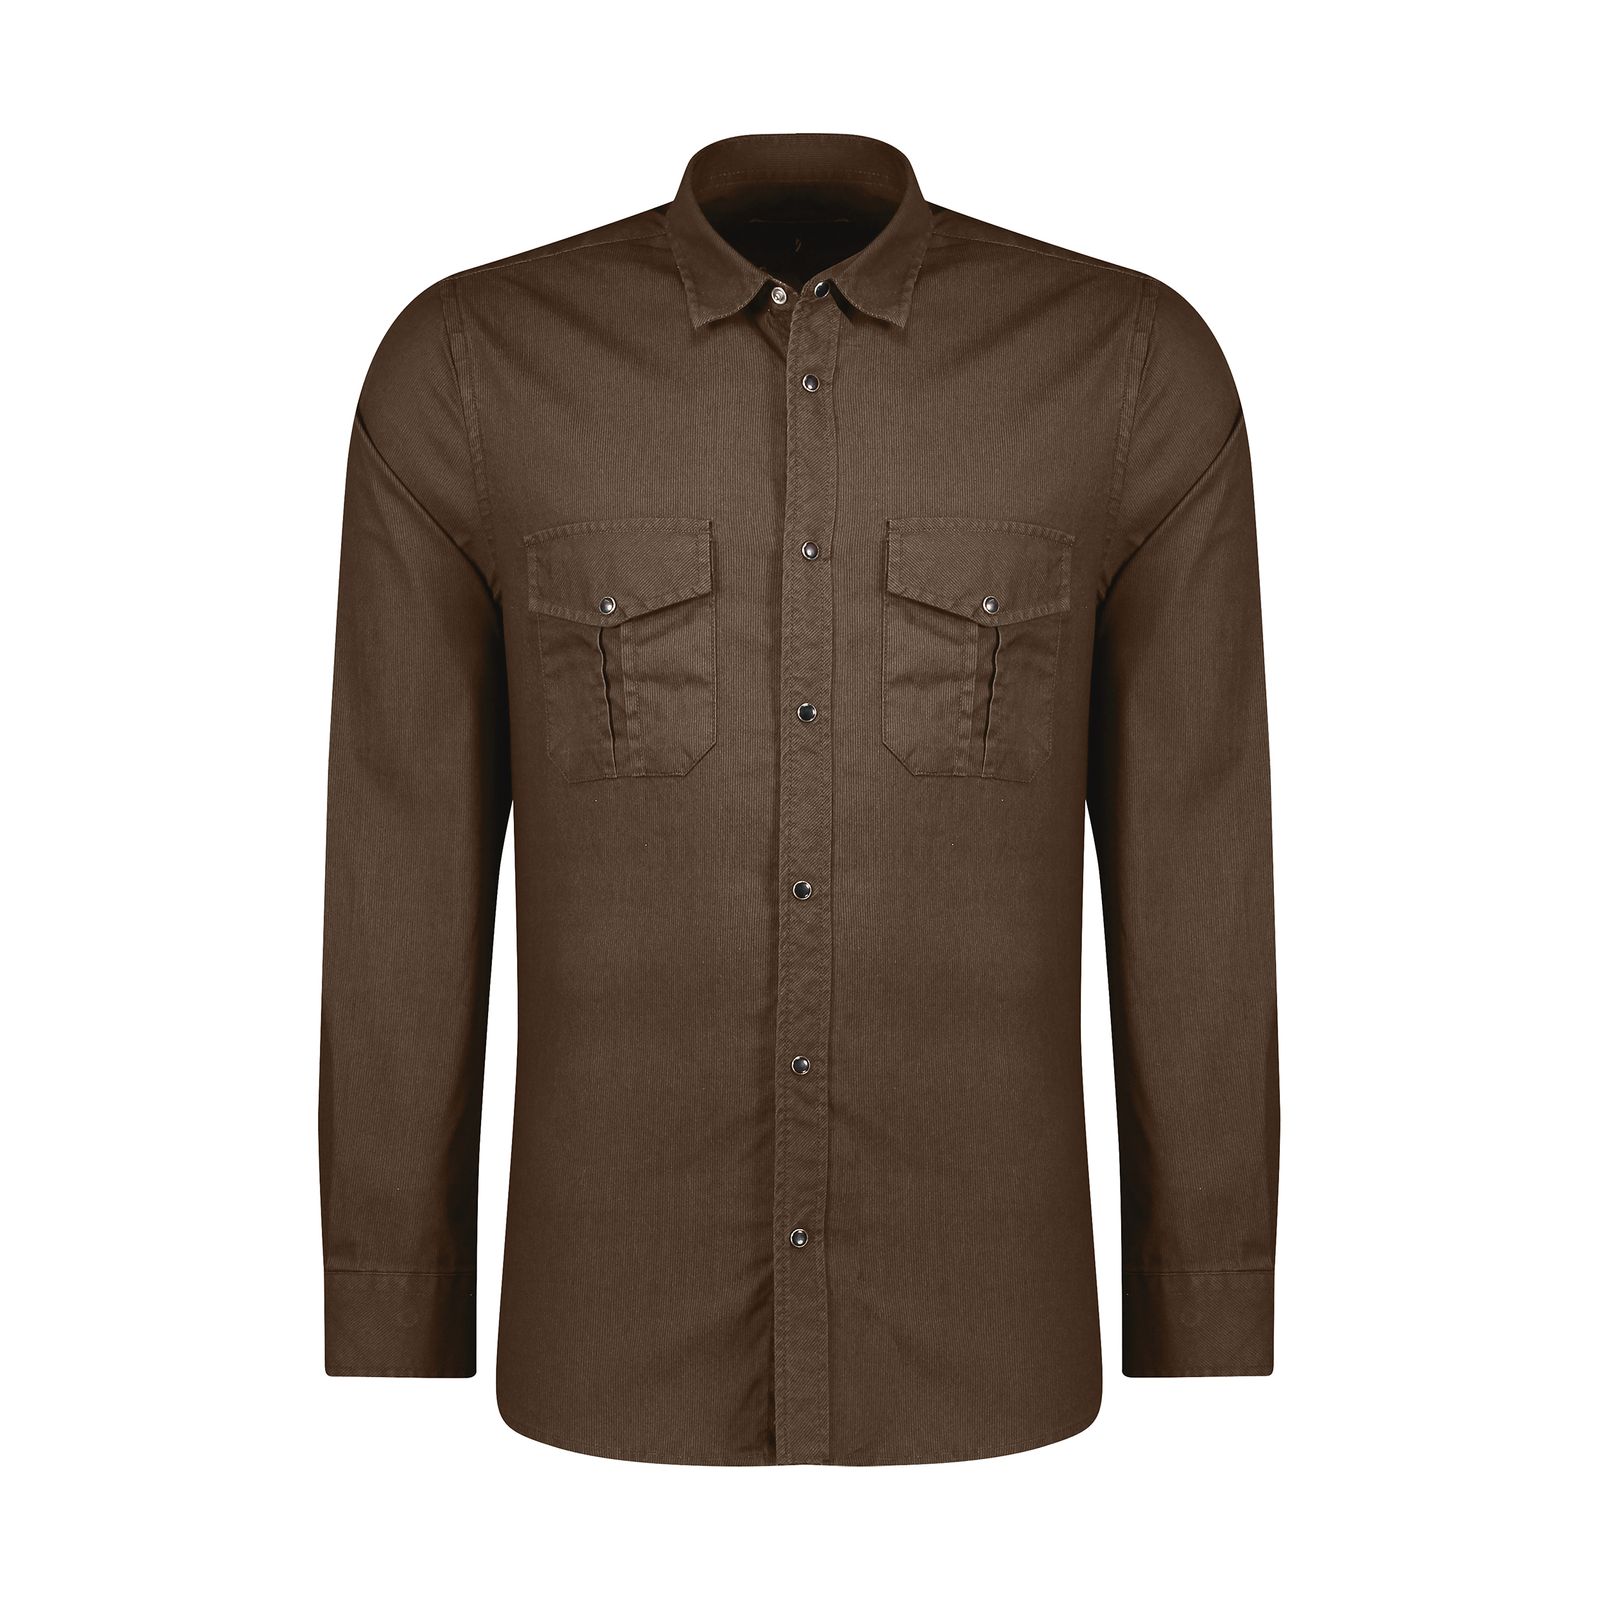 پیراهن آستین بلند مردانه پاتن جامه مدل 102721010222112 رنگ قهوه ای  -  - 1